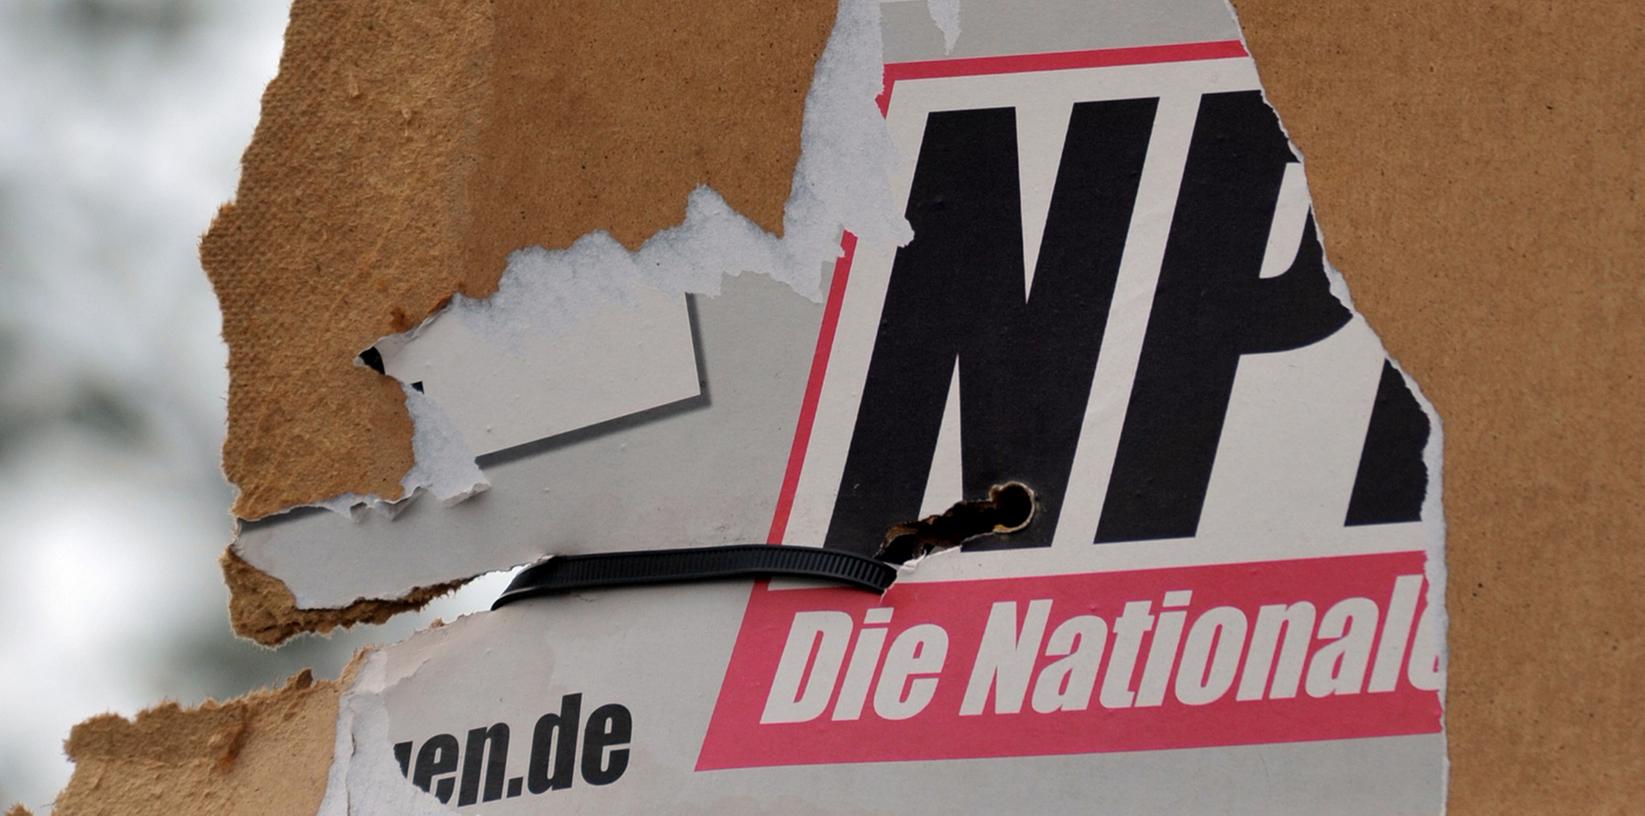 Ob sich die Plakate der rechtsextremen NPD im Europawahlkampf im gesetzlichen Rahmen bewegen, will Nürnbergs Oberbürgermeister Ulrich Maly prüfen lassen.